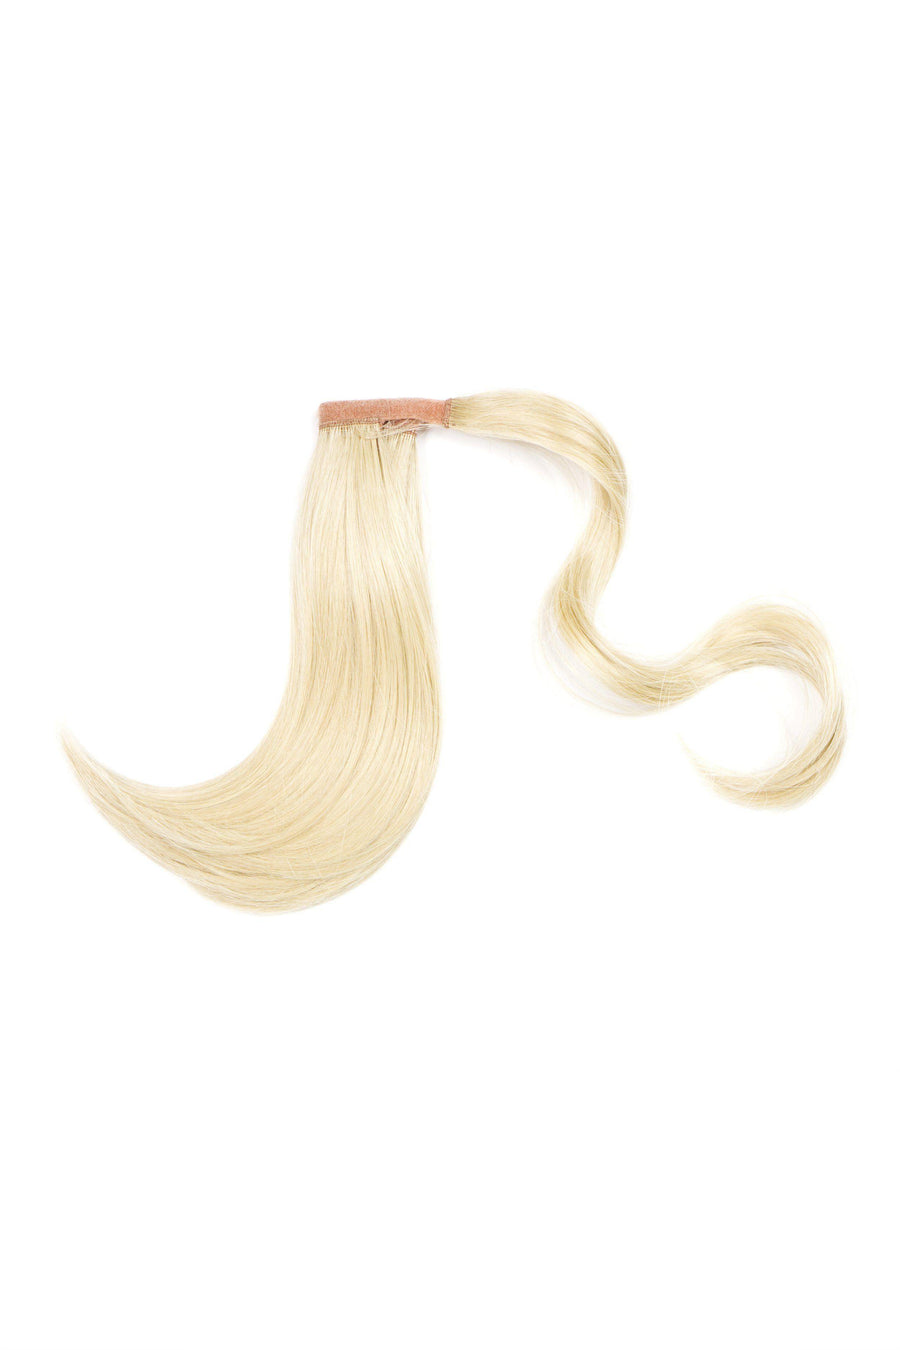 Soho Style Hair Extension Kasey - 11" Wrap-Around Ponytail Extension